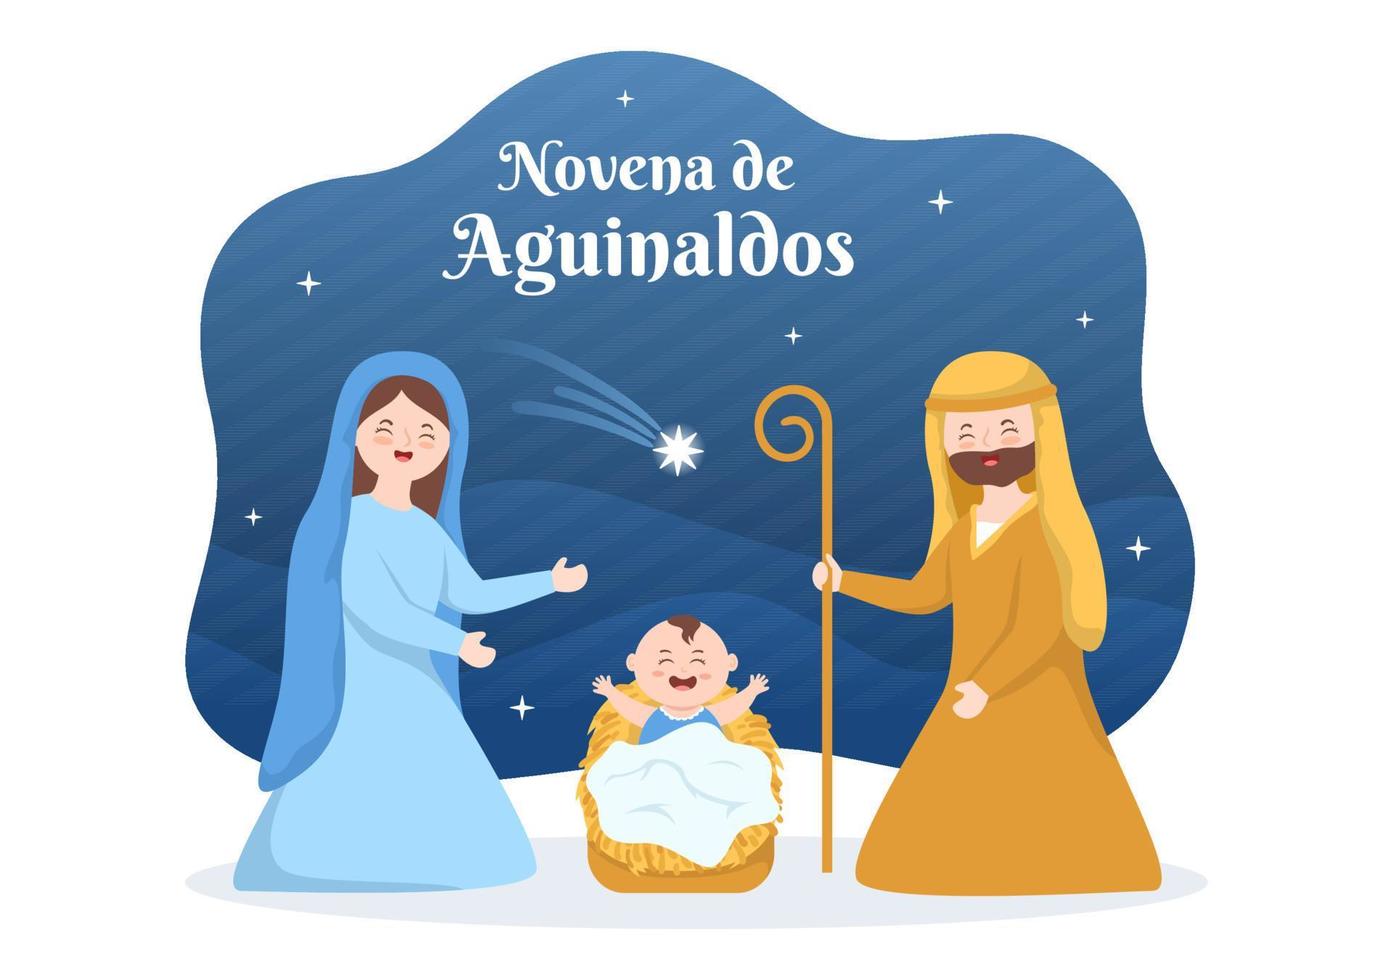 tradição de férias novena de aguinaldos na colômbia para as famílias se reunirem no natal em ilustração de modelos desenhados à mão de desenhos animados planos vetor